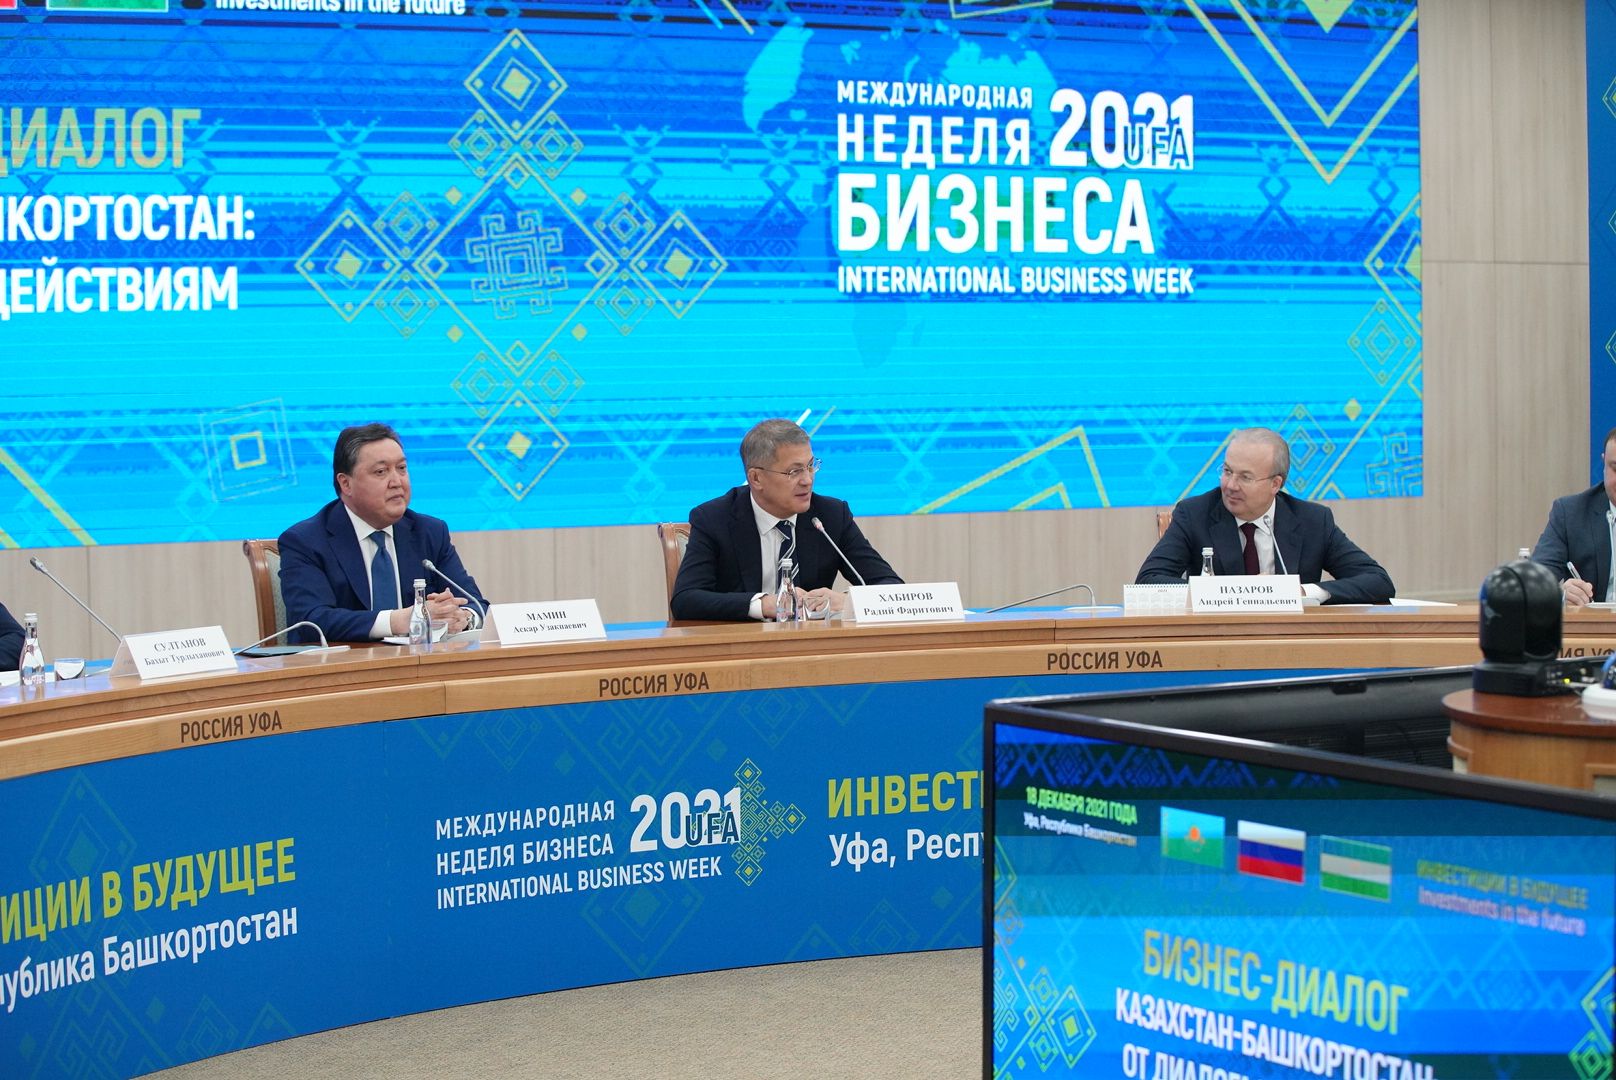 Цель – миллиард: на «Международной неделе бизнеса – 2021» в Уфе состоялся бизнес-диалог «Казахстан-Башкортостан: от диалога к действиям»